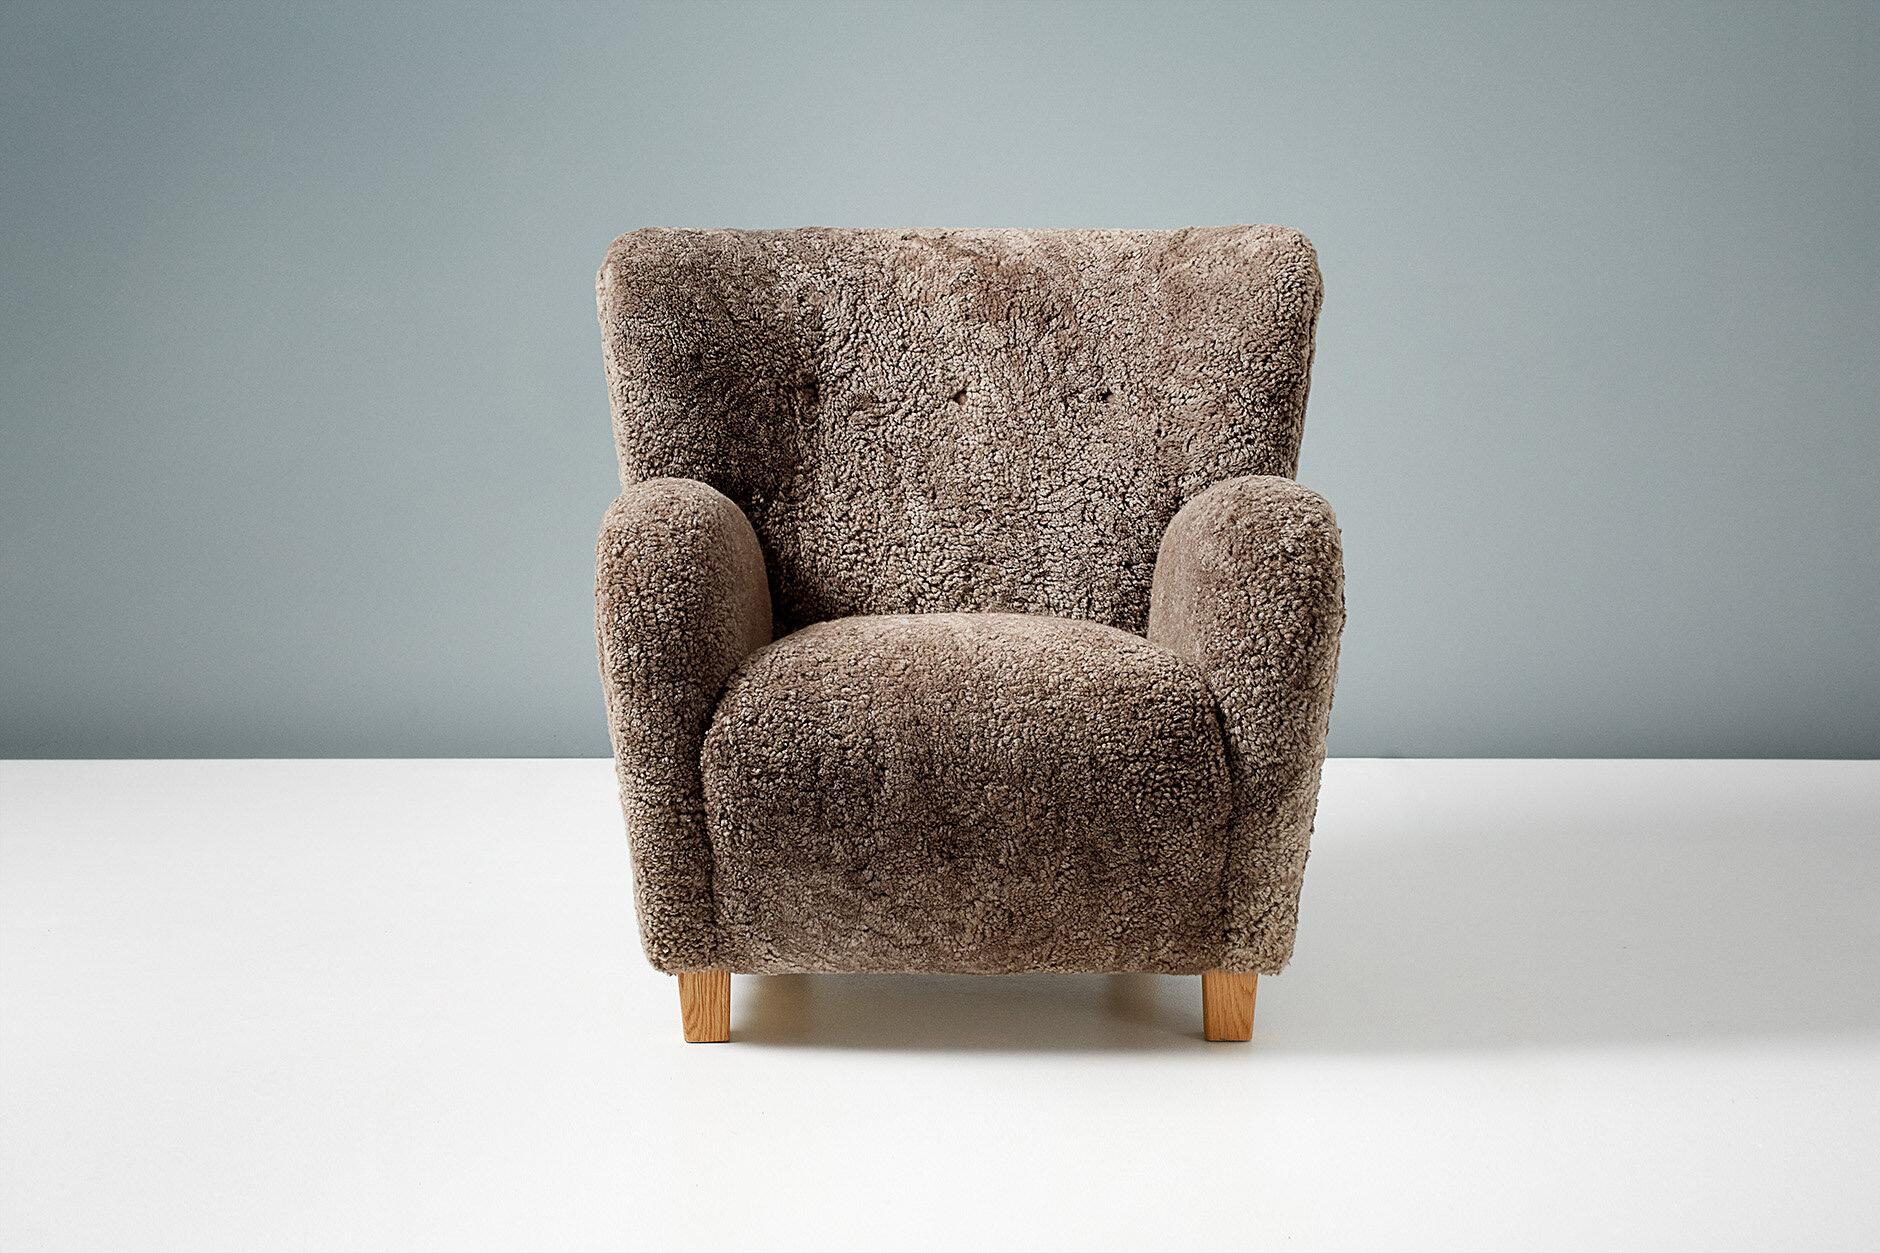 Dagmar Design - Sessel Karu

Diese hochwertigen Loungesessel werden auf Bestellung in unseren Werkstätten in Großbritannien handgefertigt. Die Stuhlbeine sind in Eiche oder Buche in verschiedenen Ausführungen erhältlich. Die Rahmen sind aus